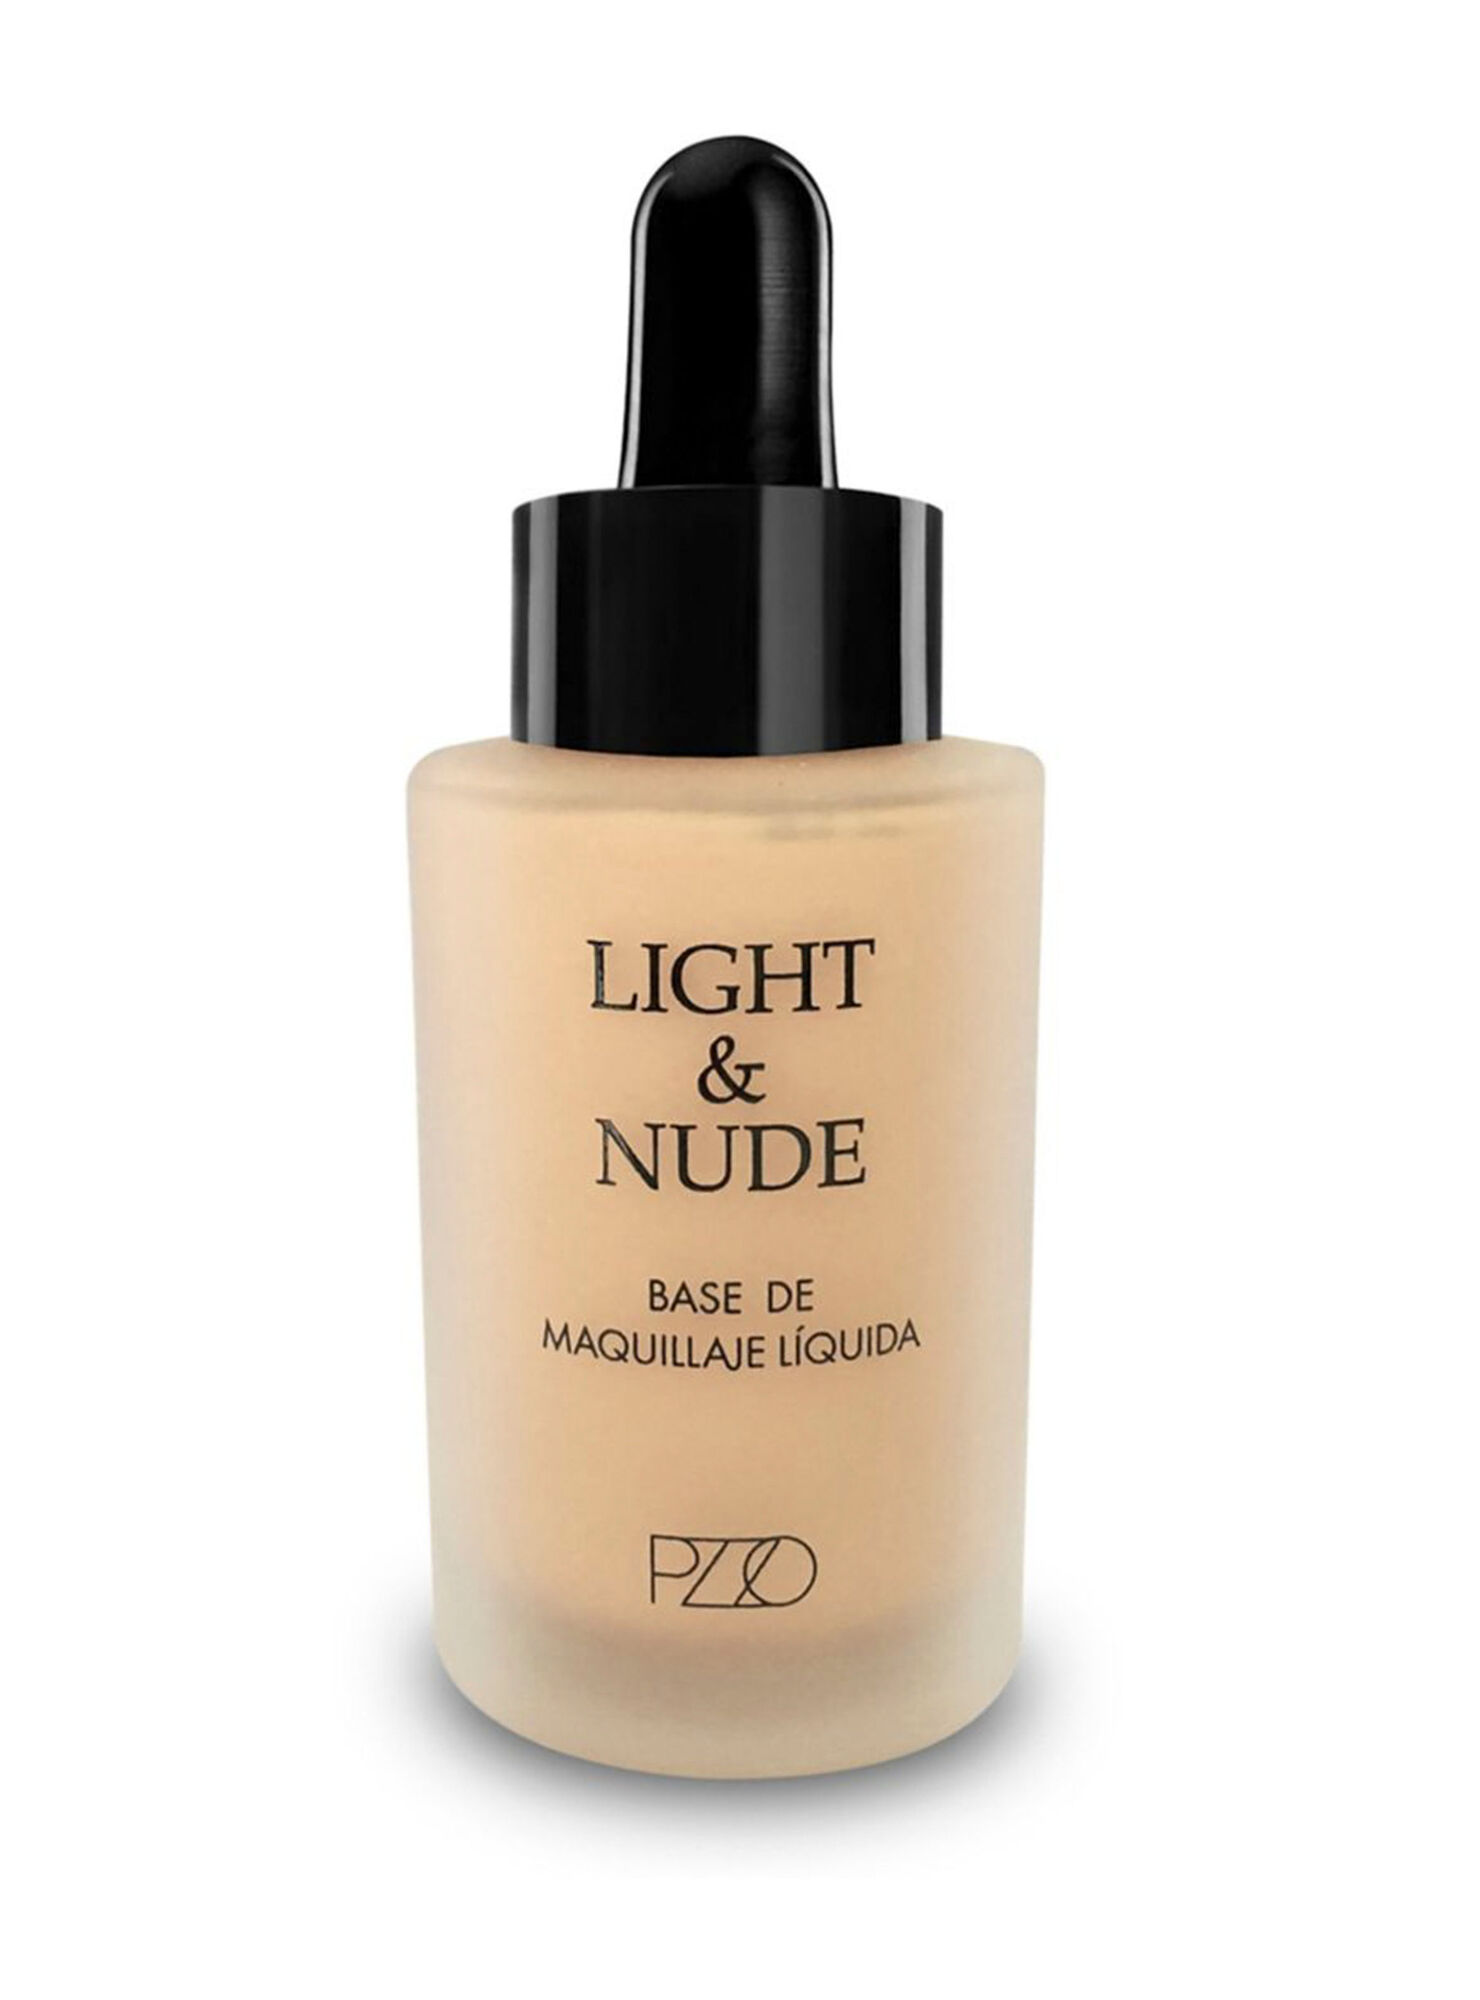 Base de Maquillaje Liquida Light Y Nude 01 Petrizzio 